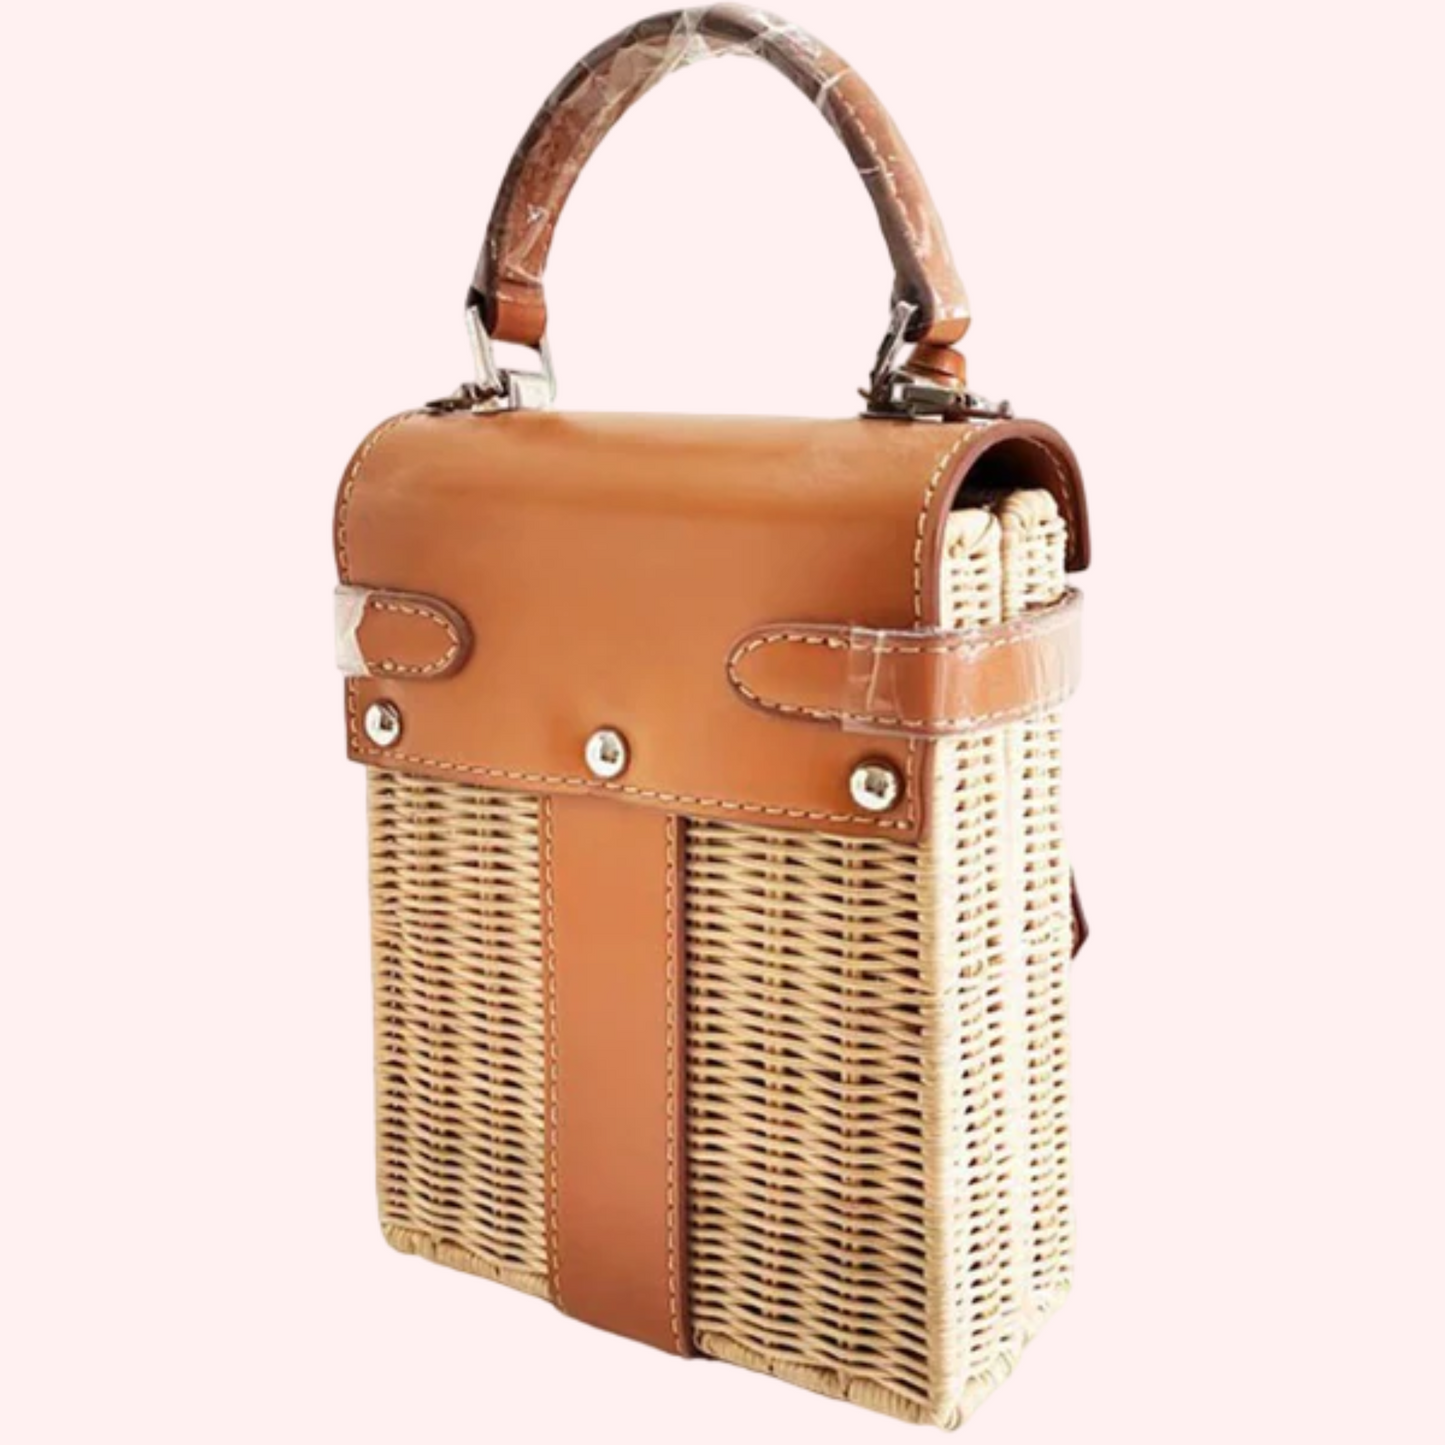 Handmade rattan bag handbag messenger straw bag